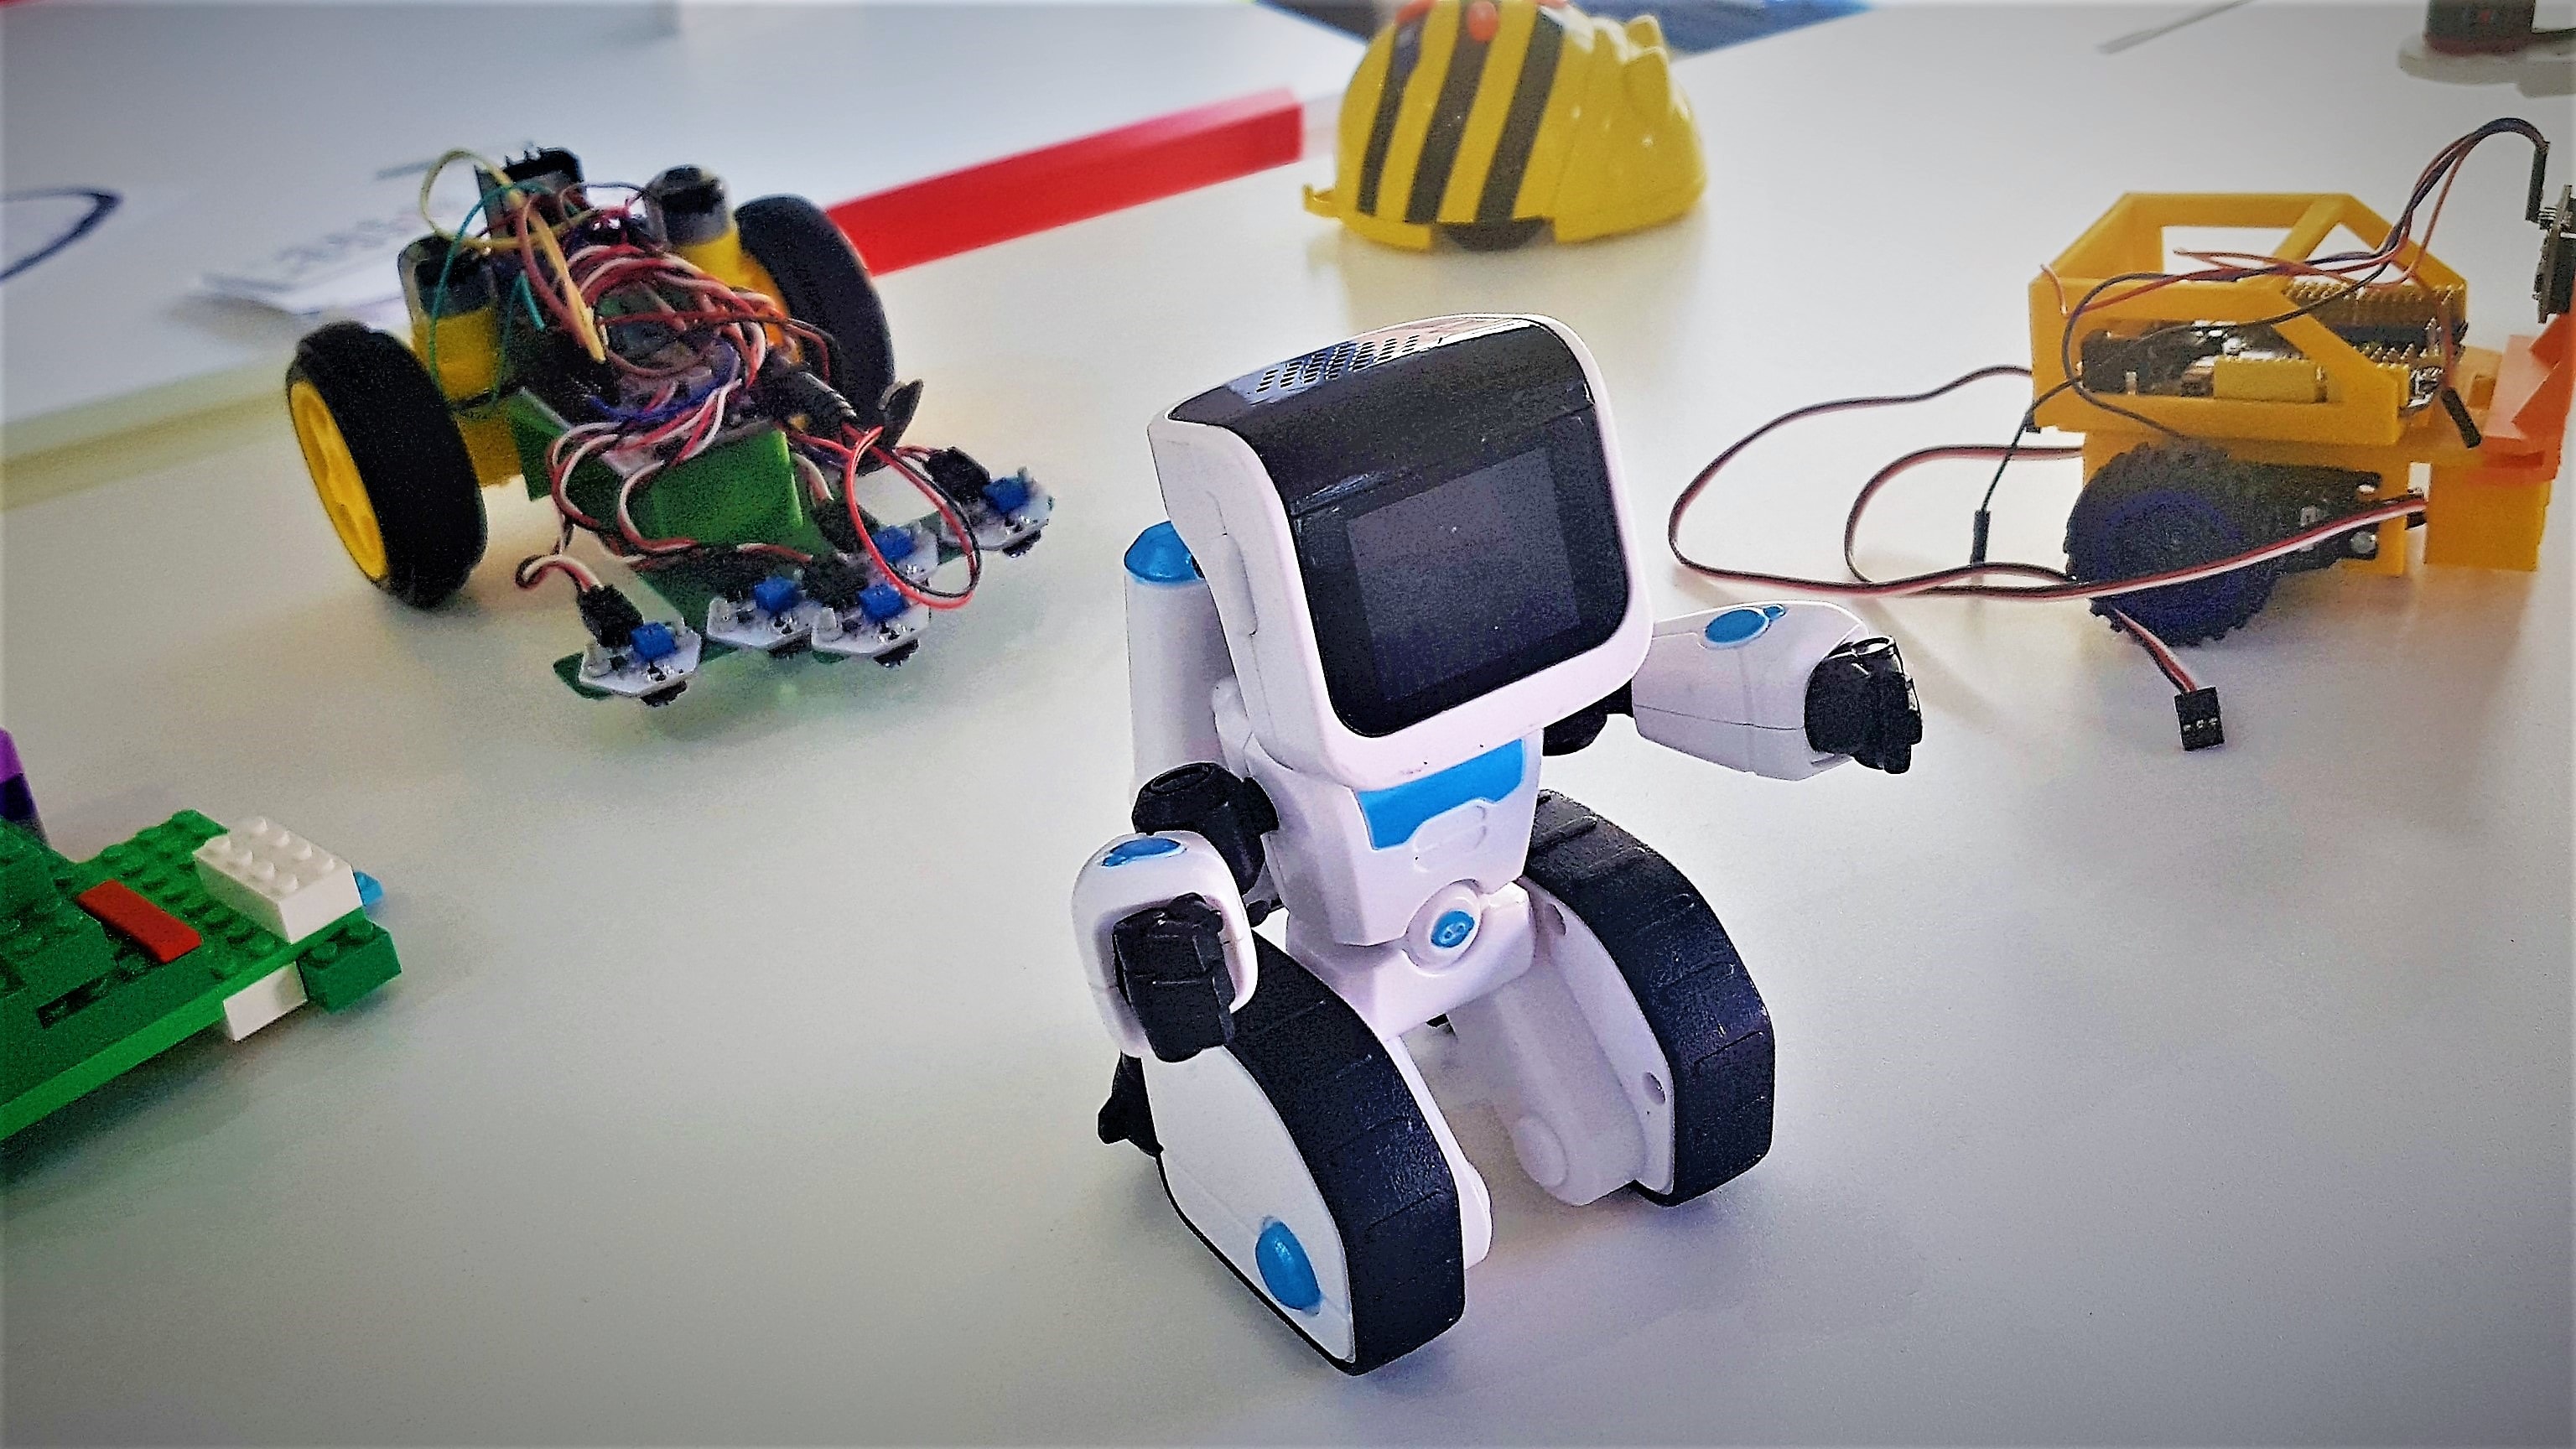 Cómo introducir la robótica en aula | Rockbotic.com